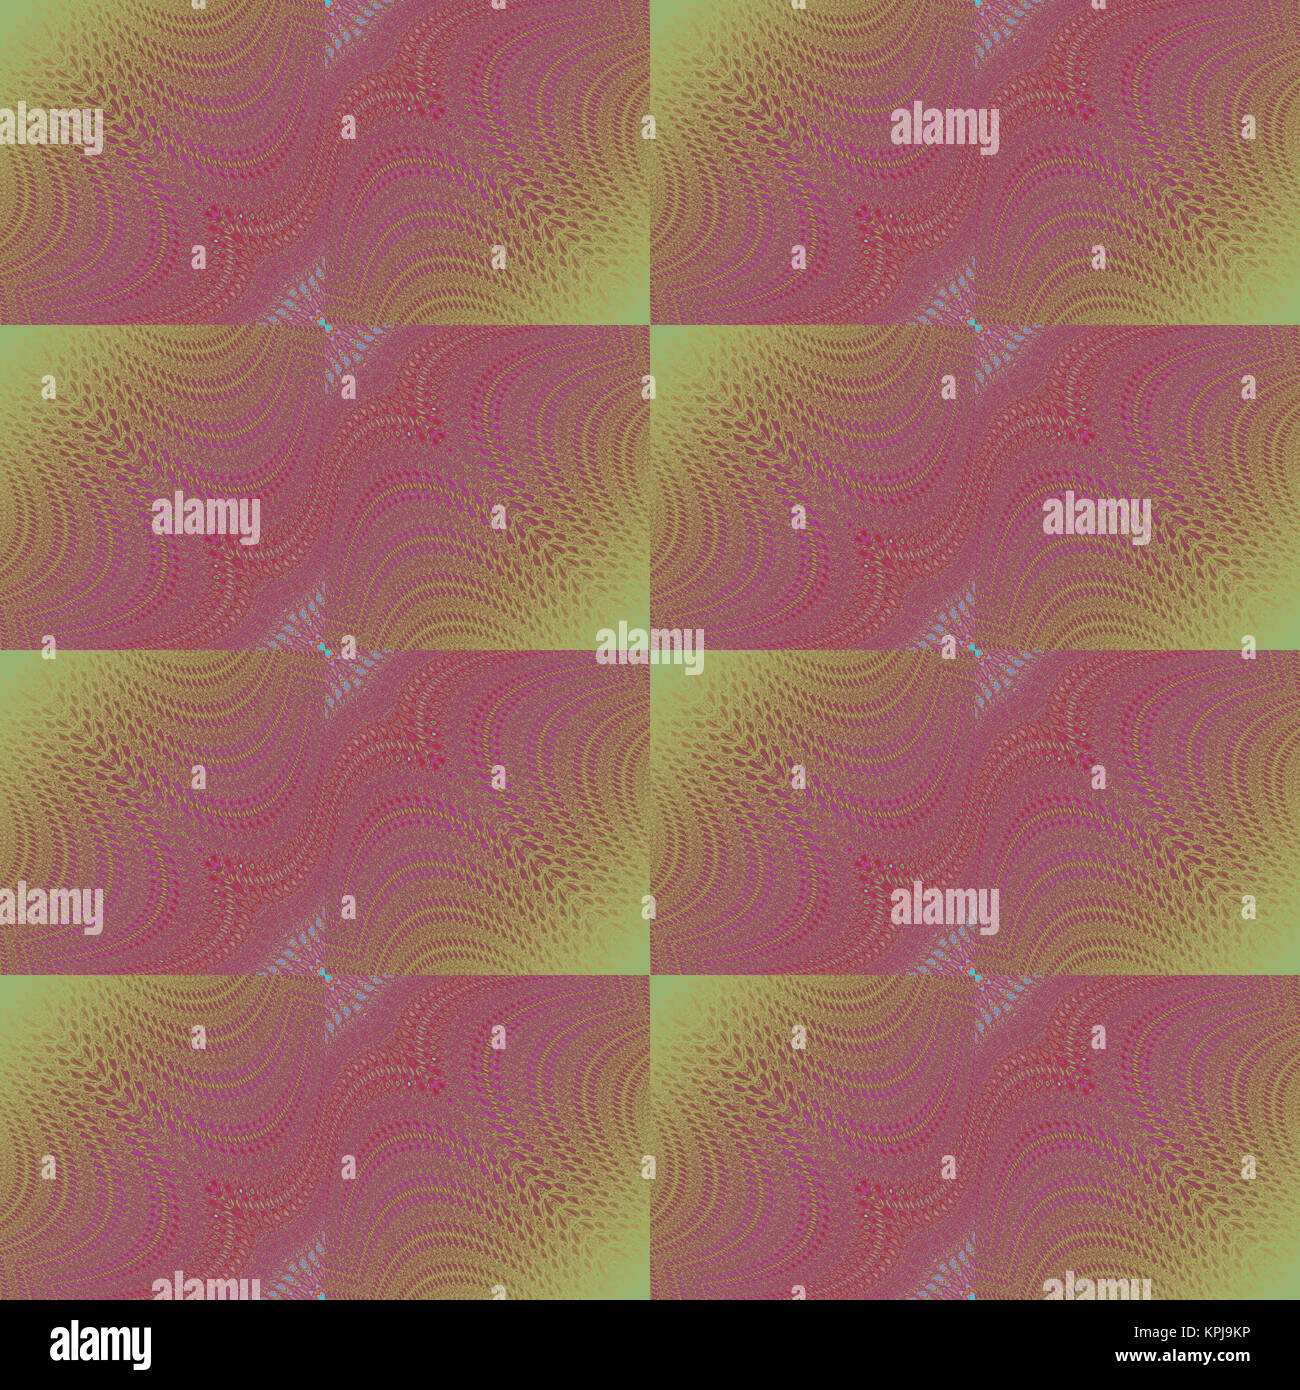 Geométrica abstracta de fondo sin fisuras. Cambia el patrón de cuadrados con delicadas líneas onduladas en tonos violeta rojo sobre verde oliva. Foto de stock